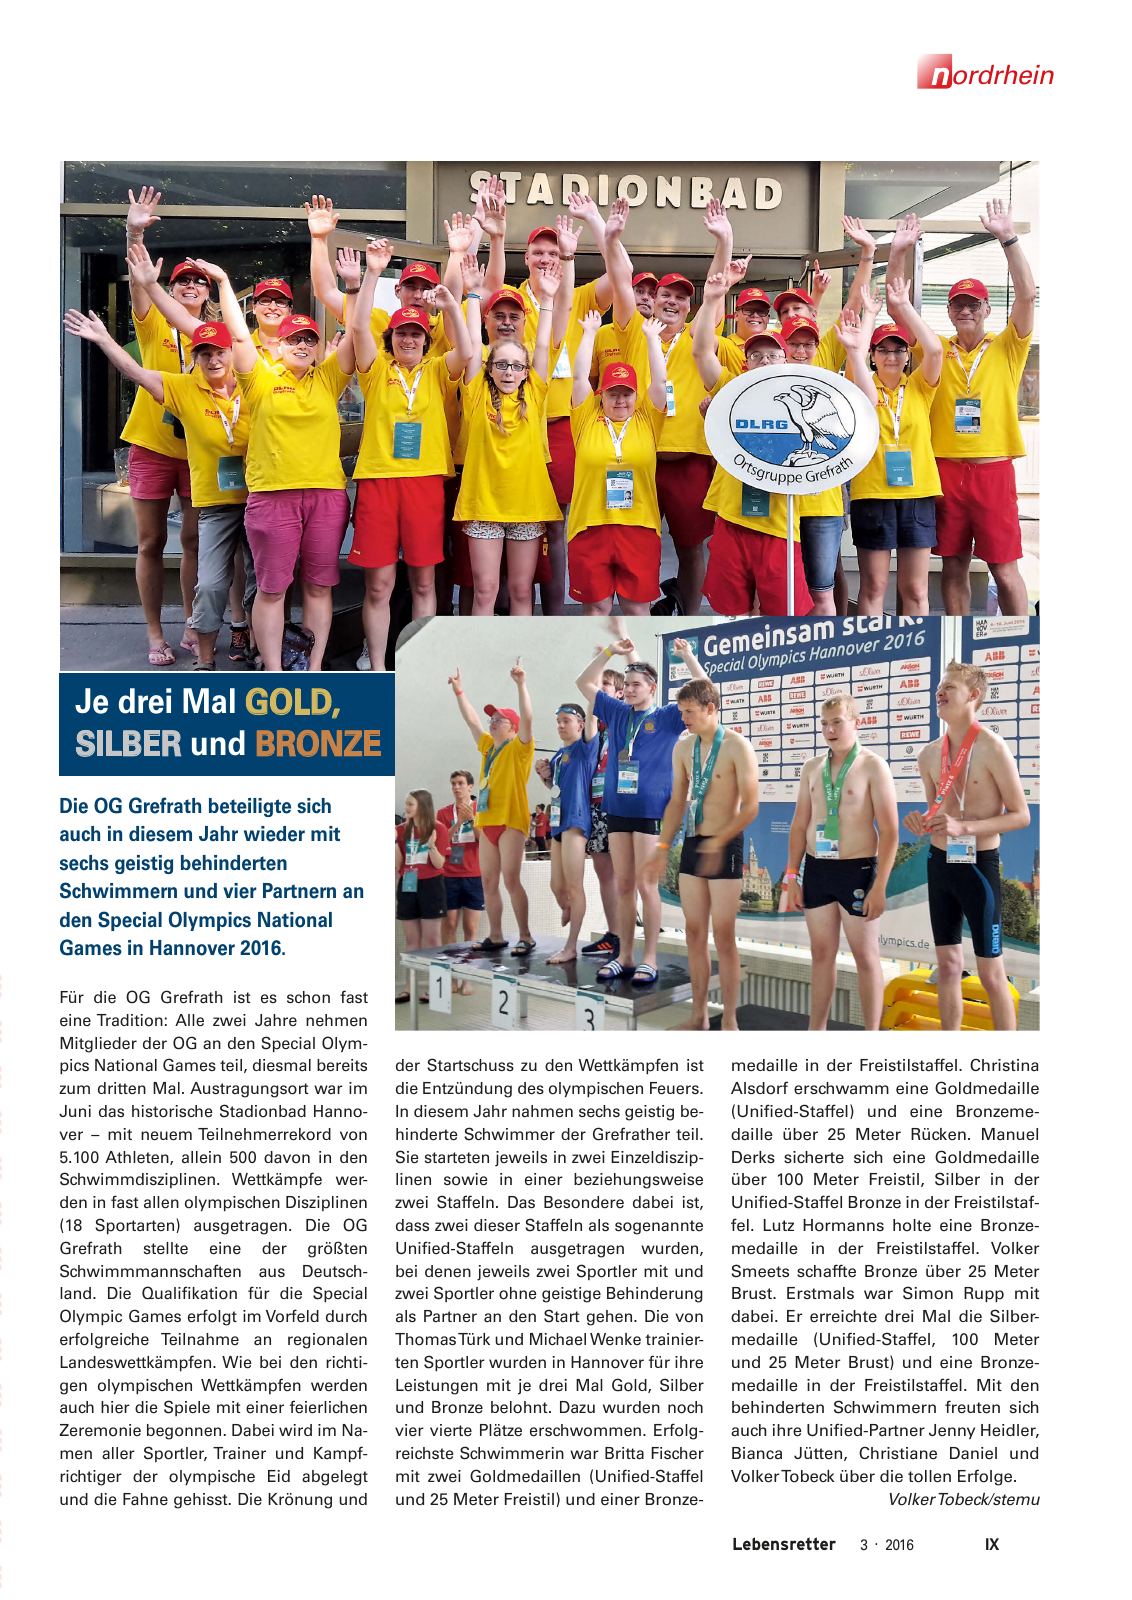 Vorschau Lebensretter 3/2016 - Regionalausgabe Nordrhein Seite 11